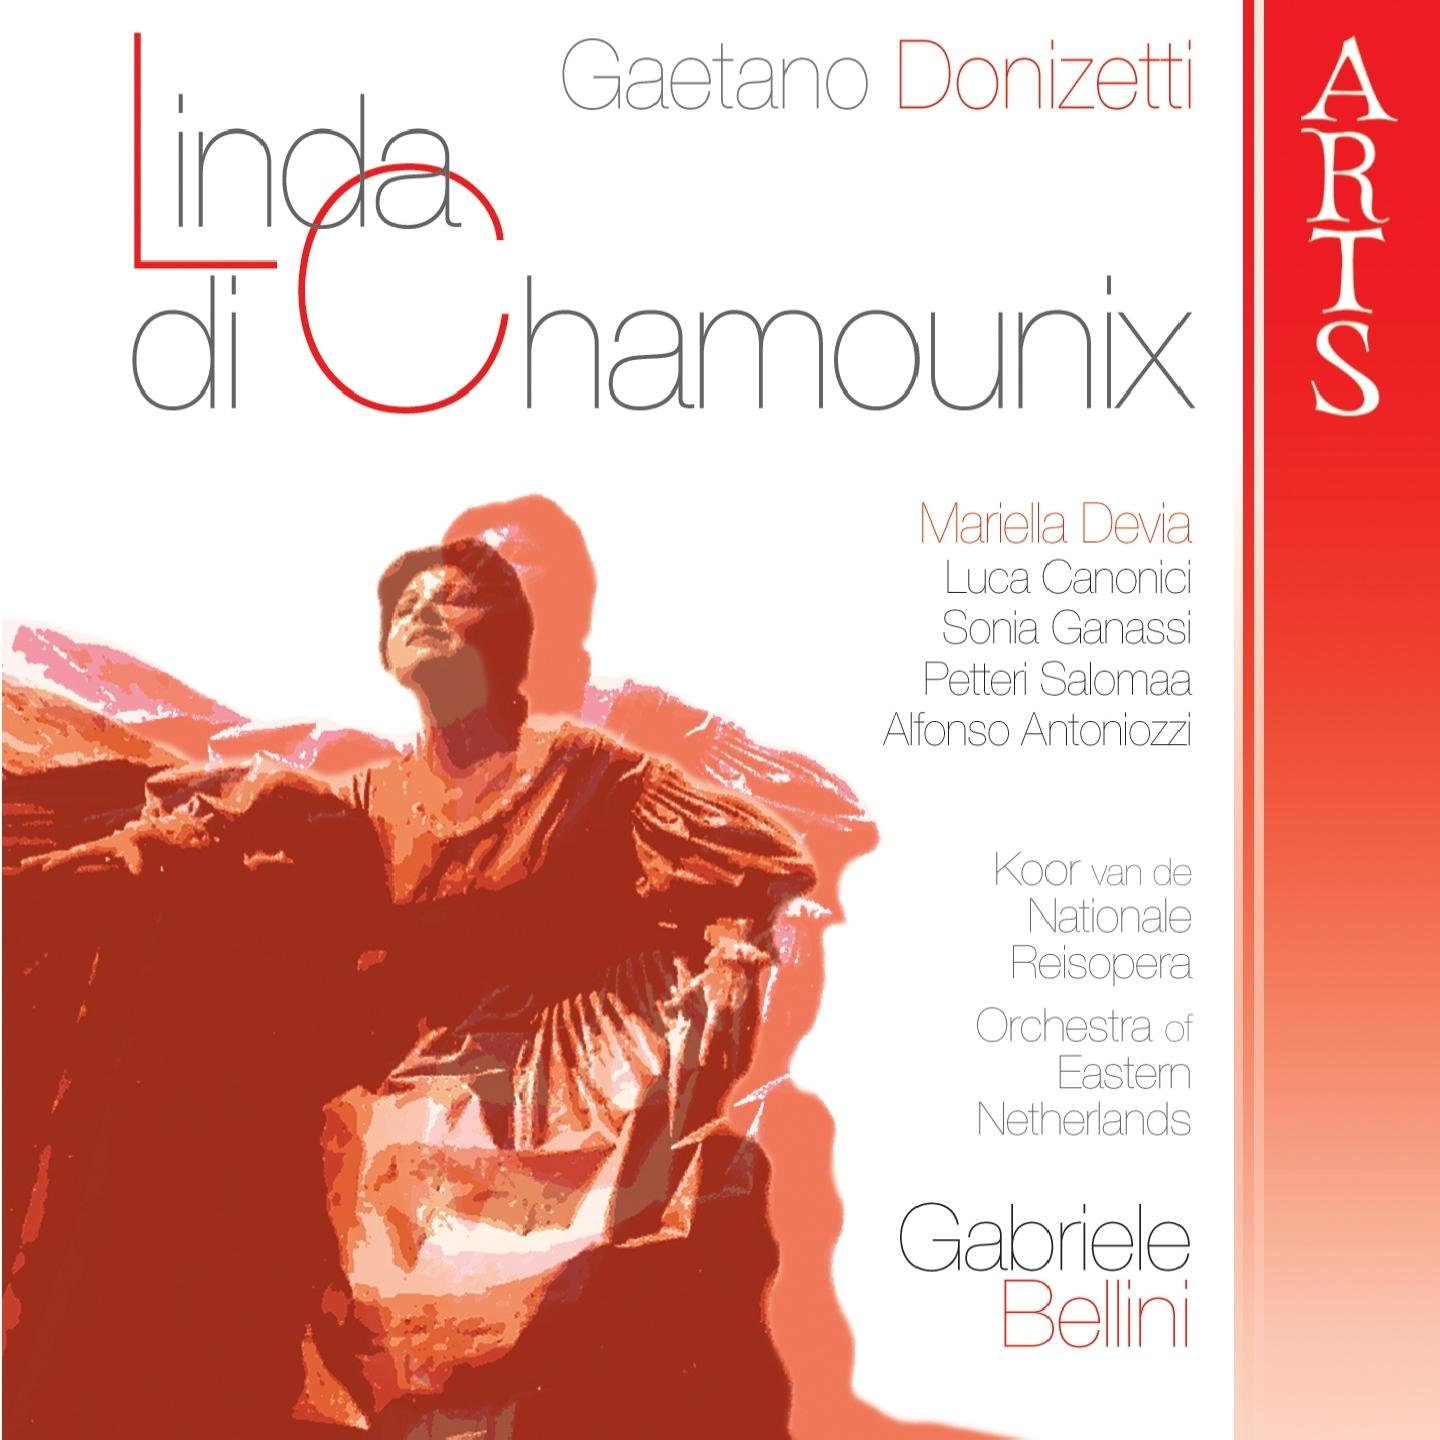 Linda di Chamounix: Act II - Parigi, Scena e Duetto "Carlo!...Ah!...Il mio cor..."